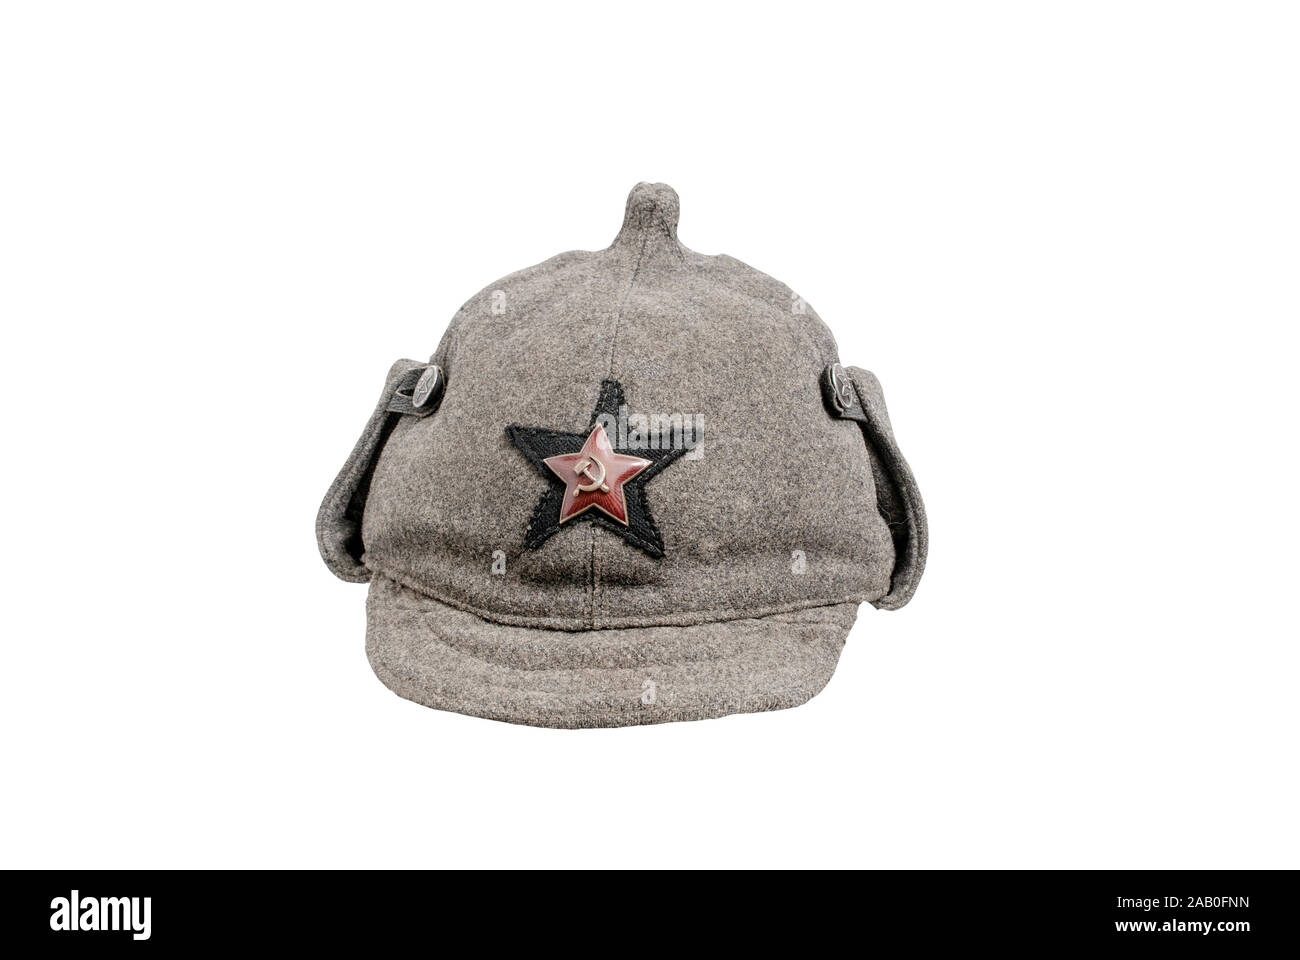 La Unión Soviética (Rusia) de la historia. Gorra militar URSS Budenny (PAC) -señaló el casco antiguo usado por hombres del Ejército Rojo. 1933. Rusia. Foto de stock